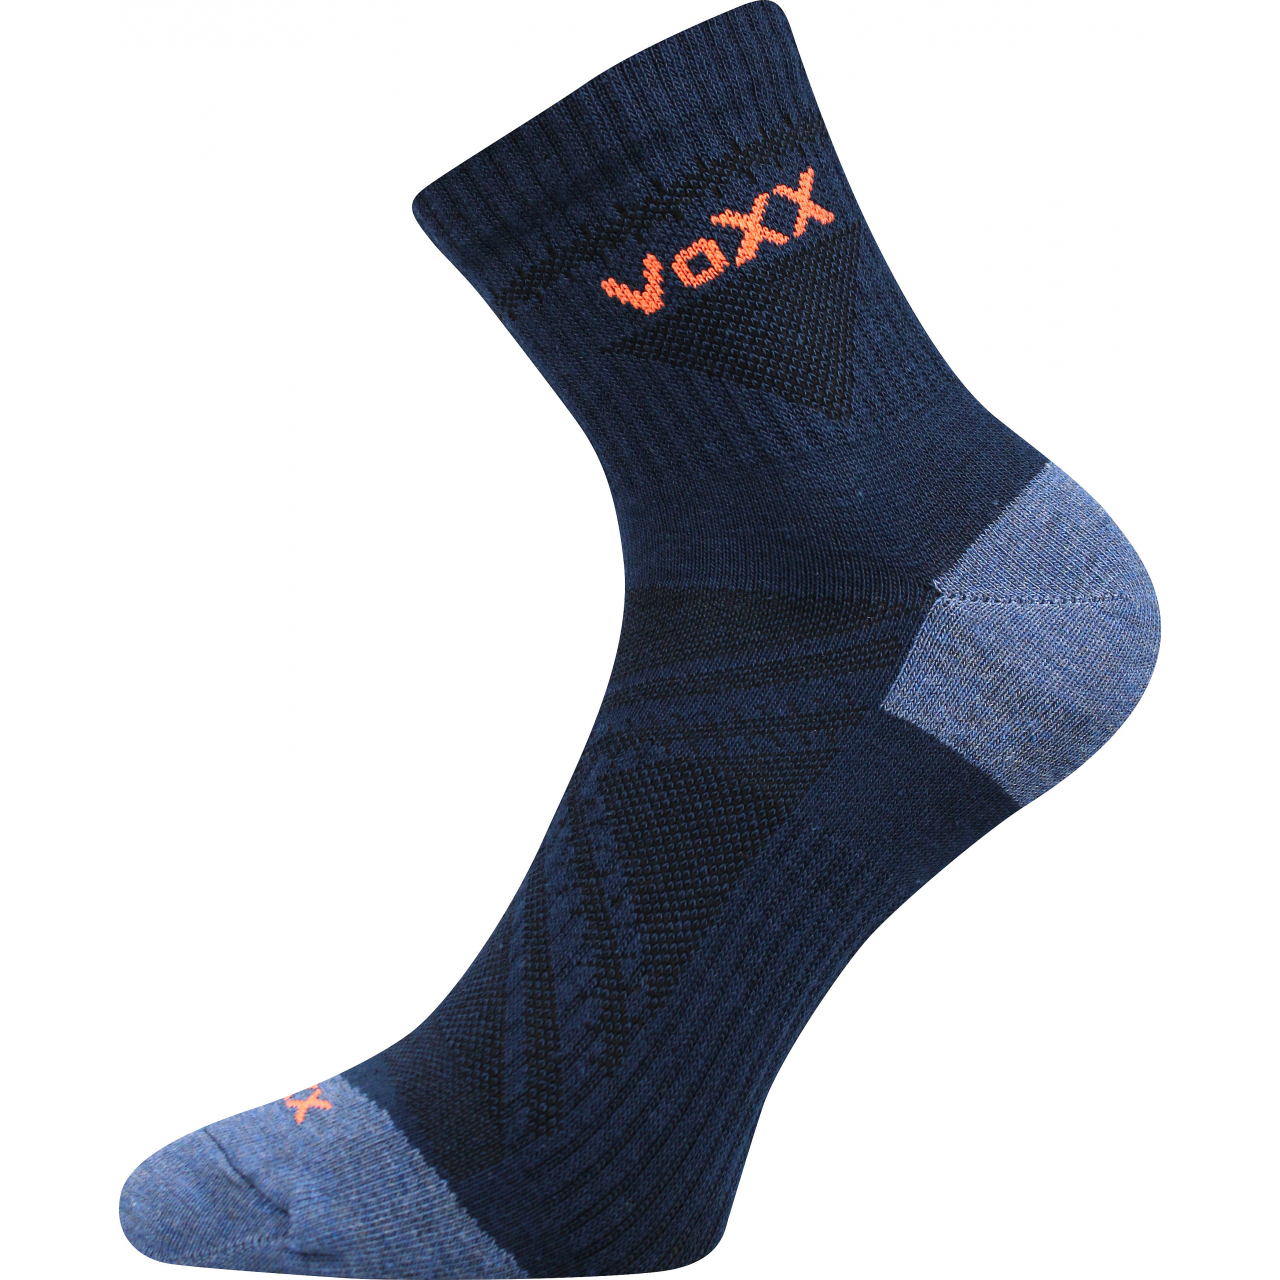 Ponožky sportovní unisex Voxx Rexon 01 - tmavě modré, 43-46